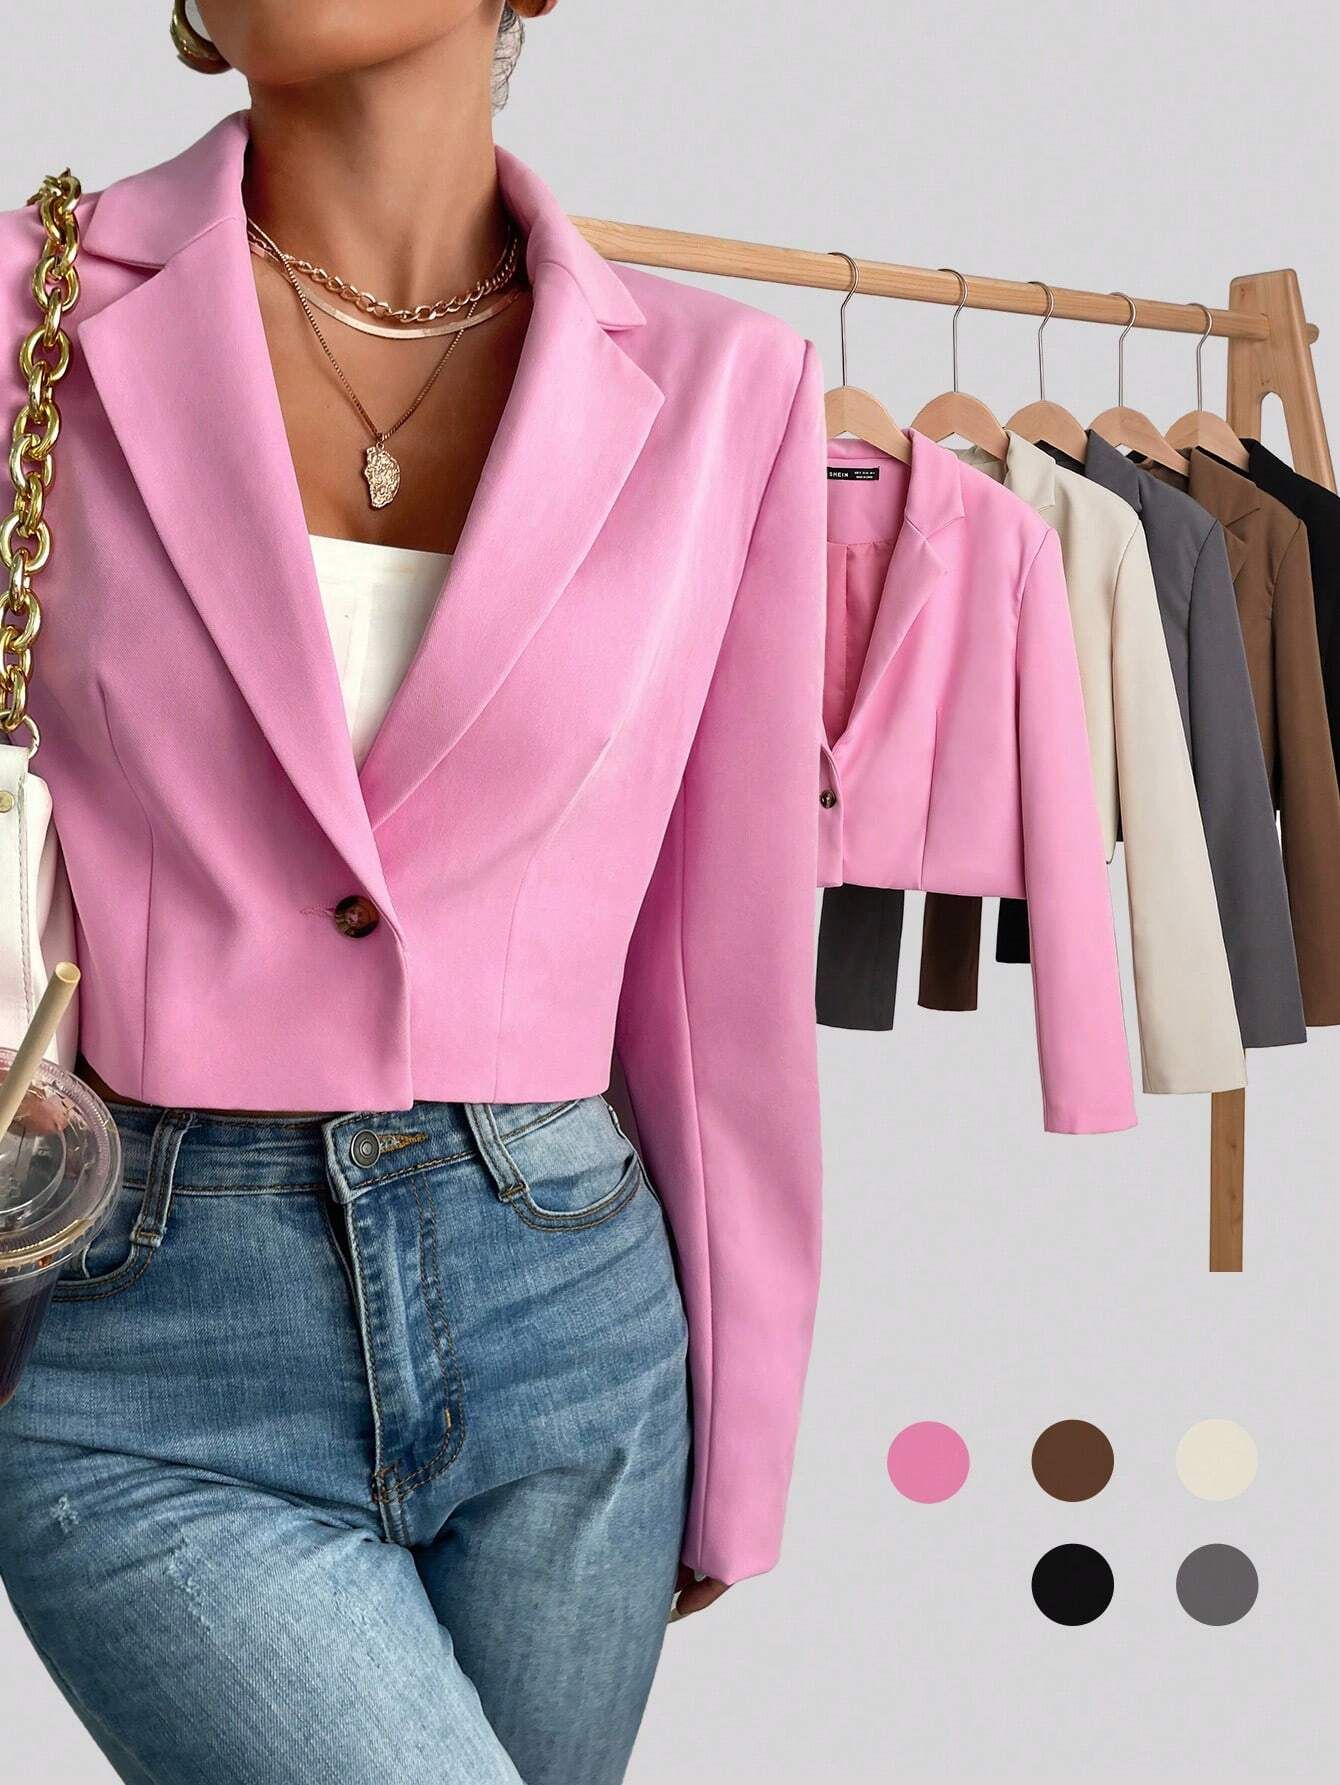 SHEIN BIZwear Lapel Collar Single Button Blazer Workwear | SHEIN